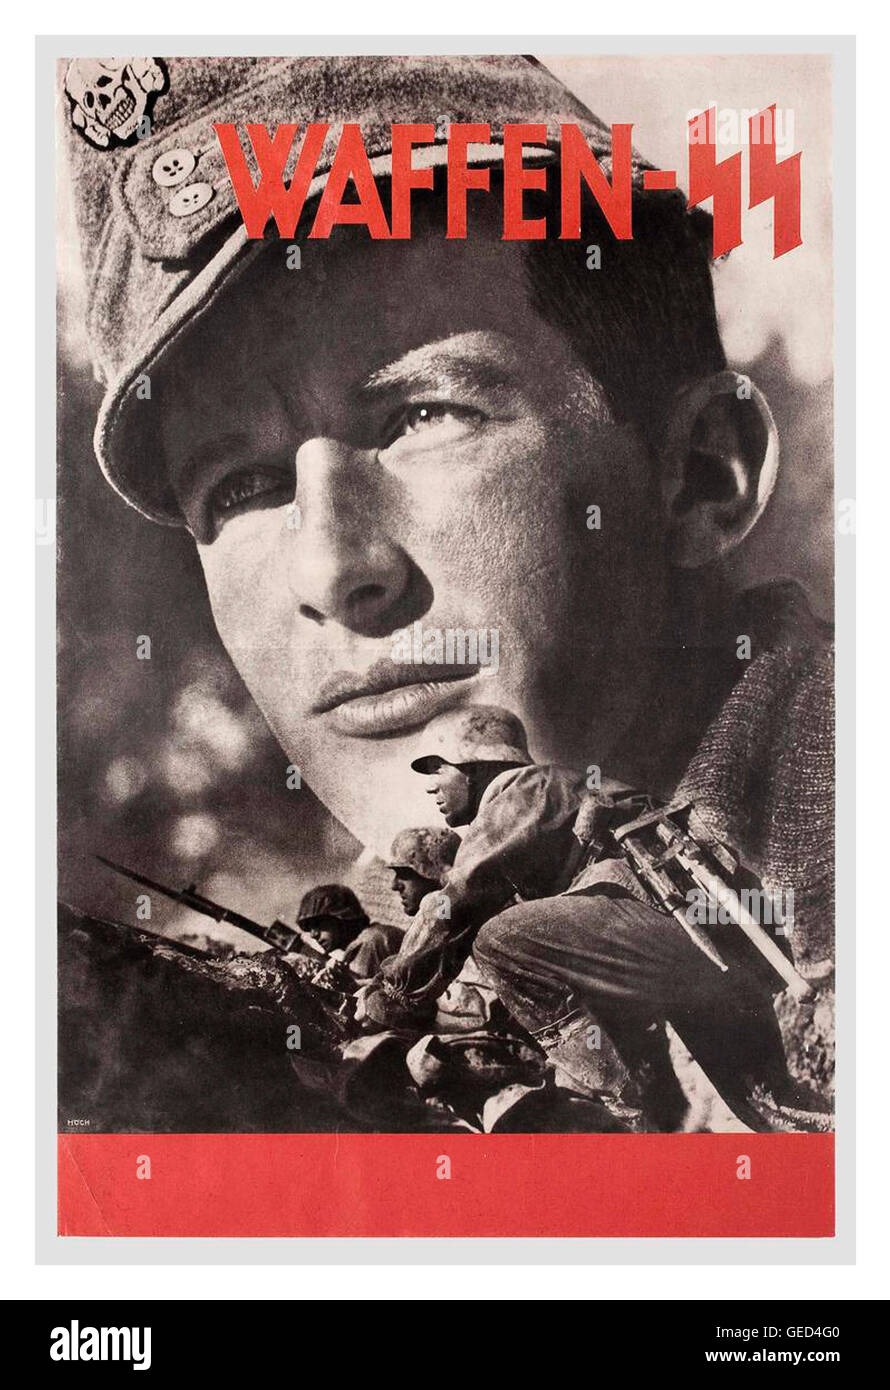 1940 La propagande de guerre allemand affiche de recrutement pour la Waffen SS nazie brutale notoires du régime militaire Banque D'Images